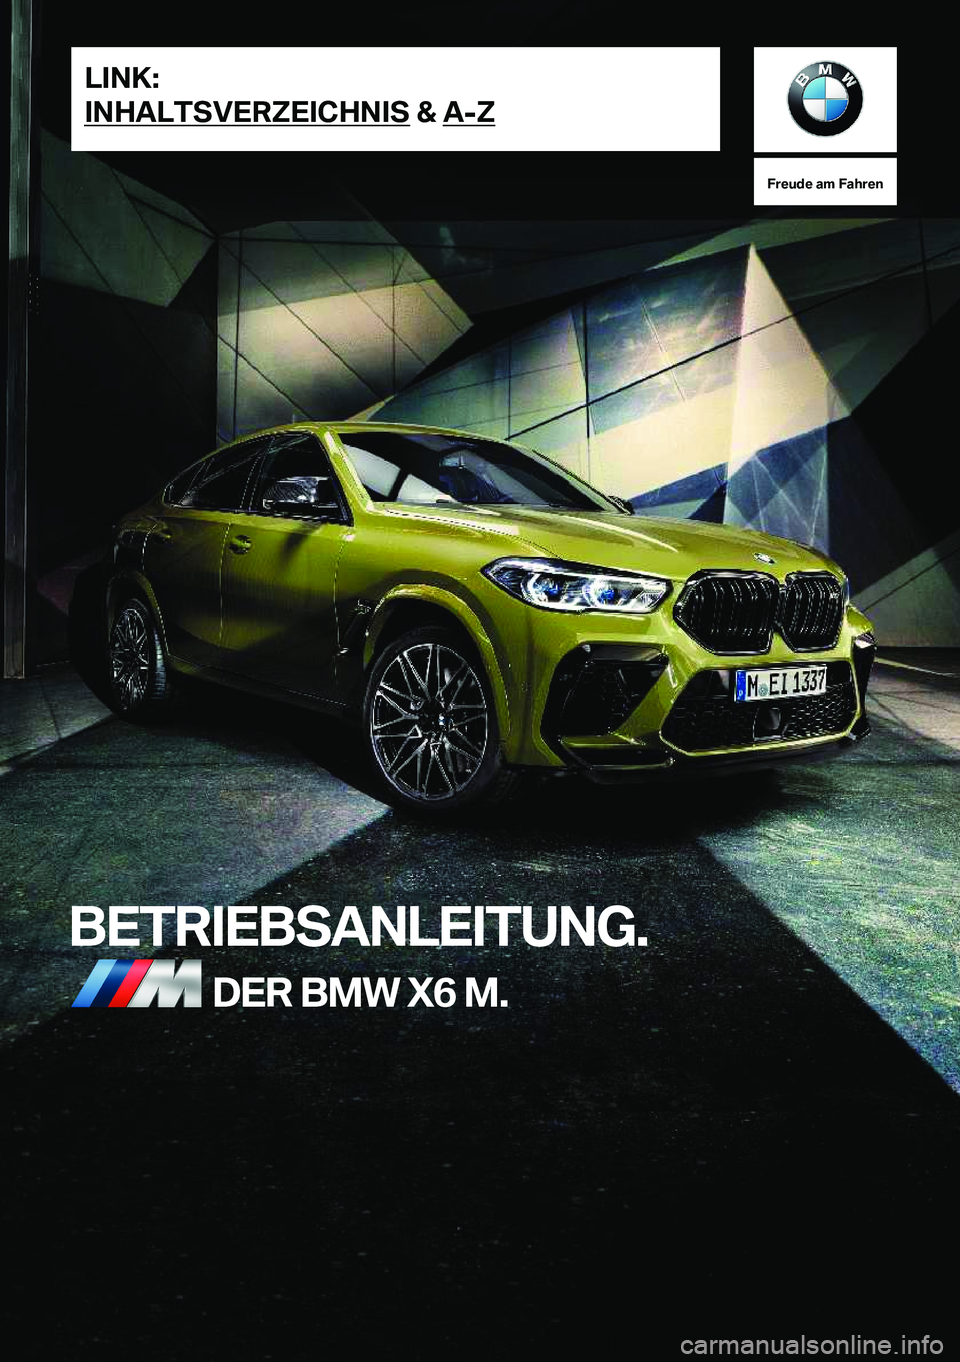 BMW X6 M 2021  Betriebsanleitungen (in German) �F�r�e�u�d�e��a�m��F�a�h�r�e�n
�B�E�T�R�I�E�B�S�A�N�L�E�I�T�U�N�G�.�D�E�R��B�M�W��X�6��M�.�L�I�N�K�:
�I�N�H�A�L�T�S�V�E�R�Z�E�I�C�H�N�I�S��&��A�-�Z�O�n�l�i�n�e��V�e�r�s�i�o�n��f�